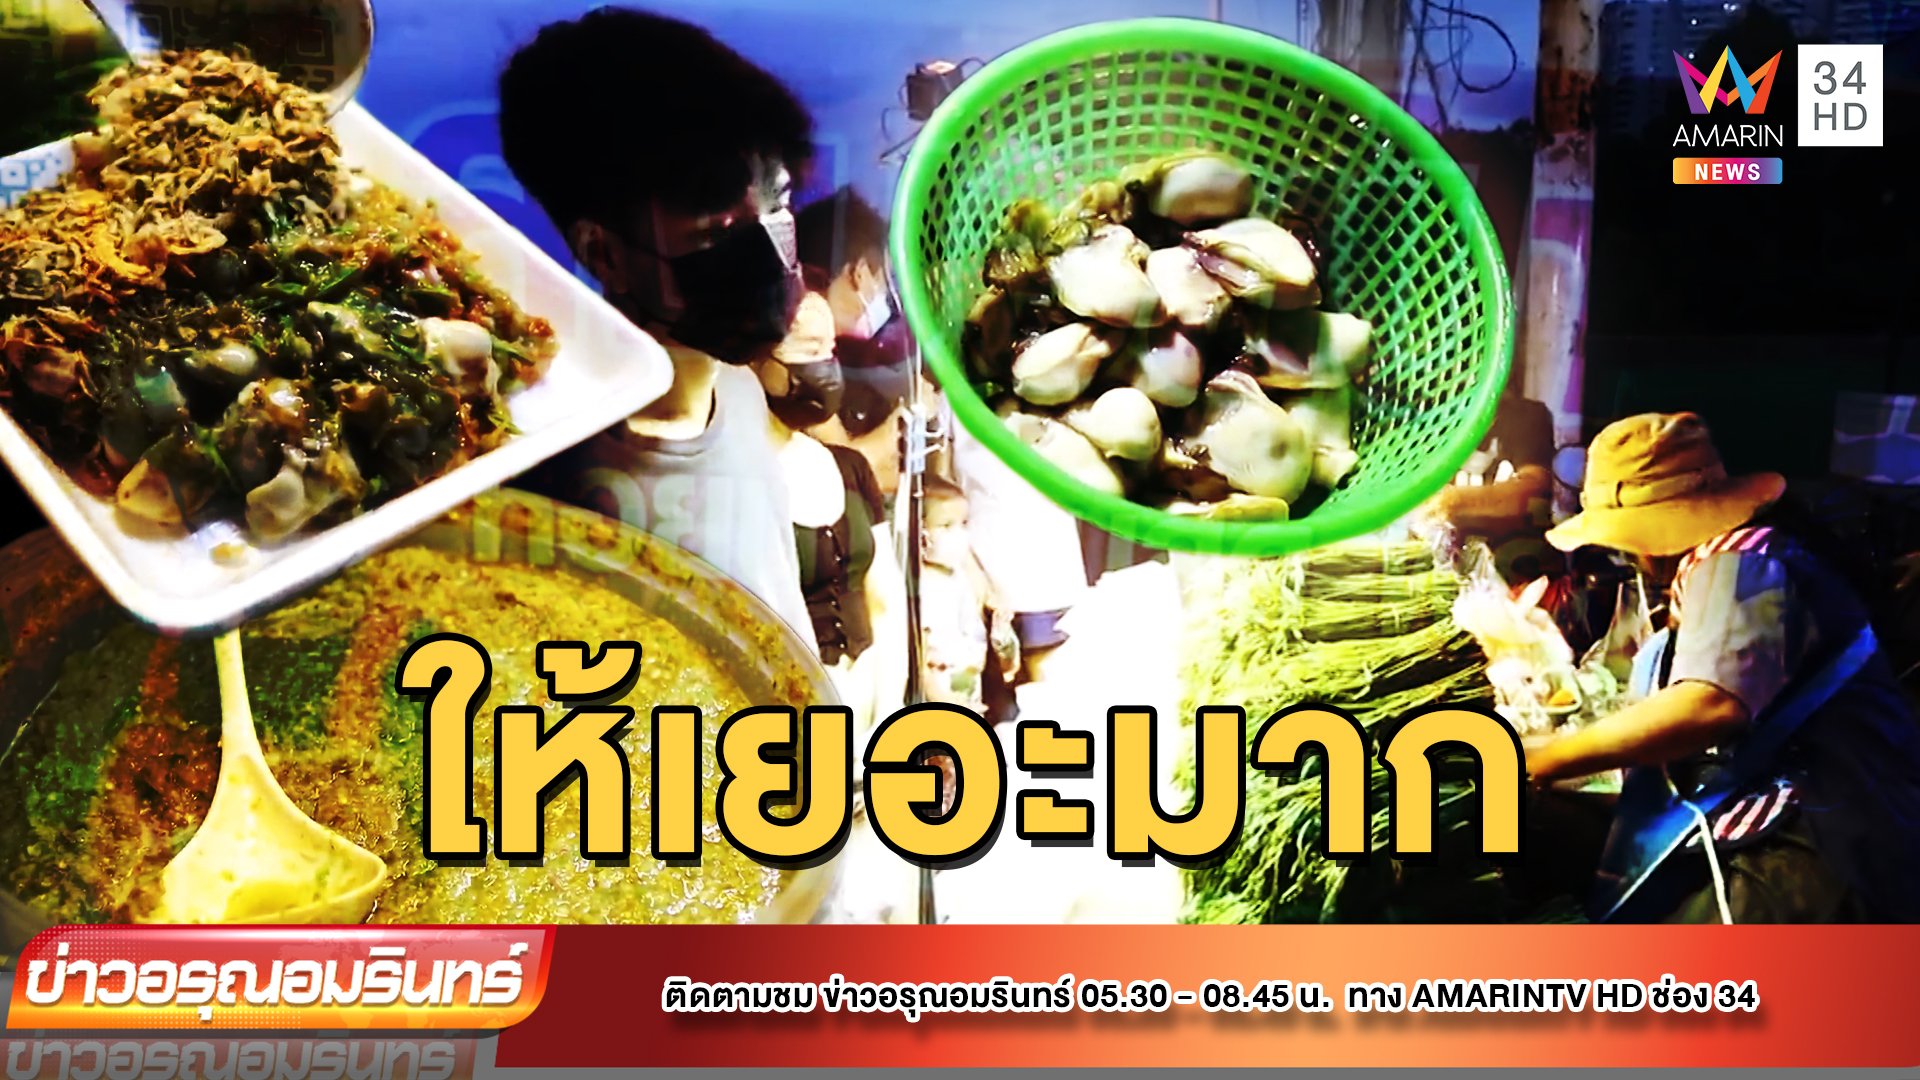 จัดเต็ม! ยำหอยนางรมเครื่องแน่น จานเดียวกินได้ทั้งหมู่บ้าน | ข่าวอรุณอมรินทร์ | 12 ก.ค. 65 | AMARIN TVHD34